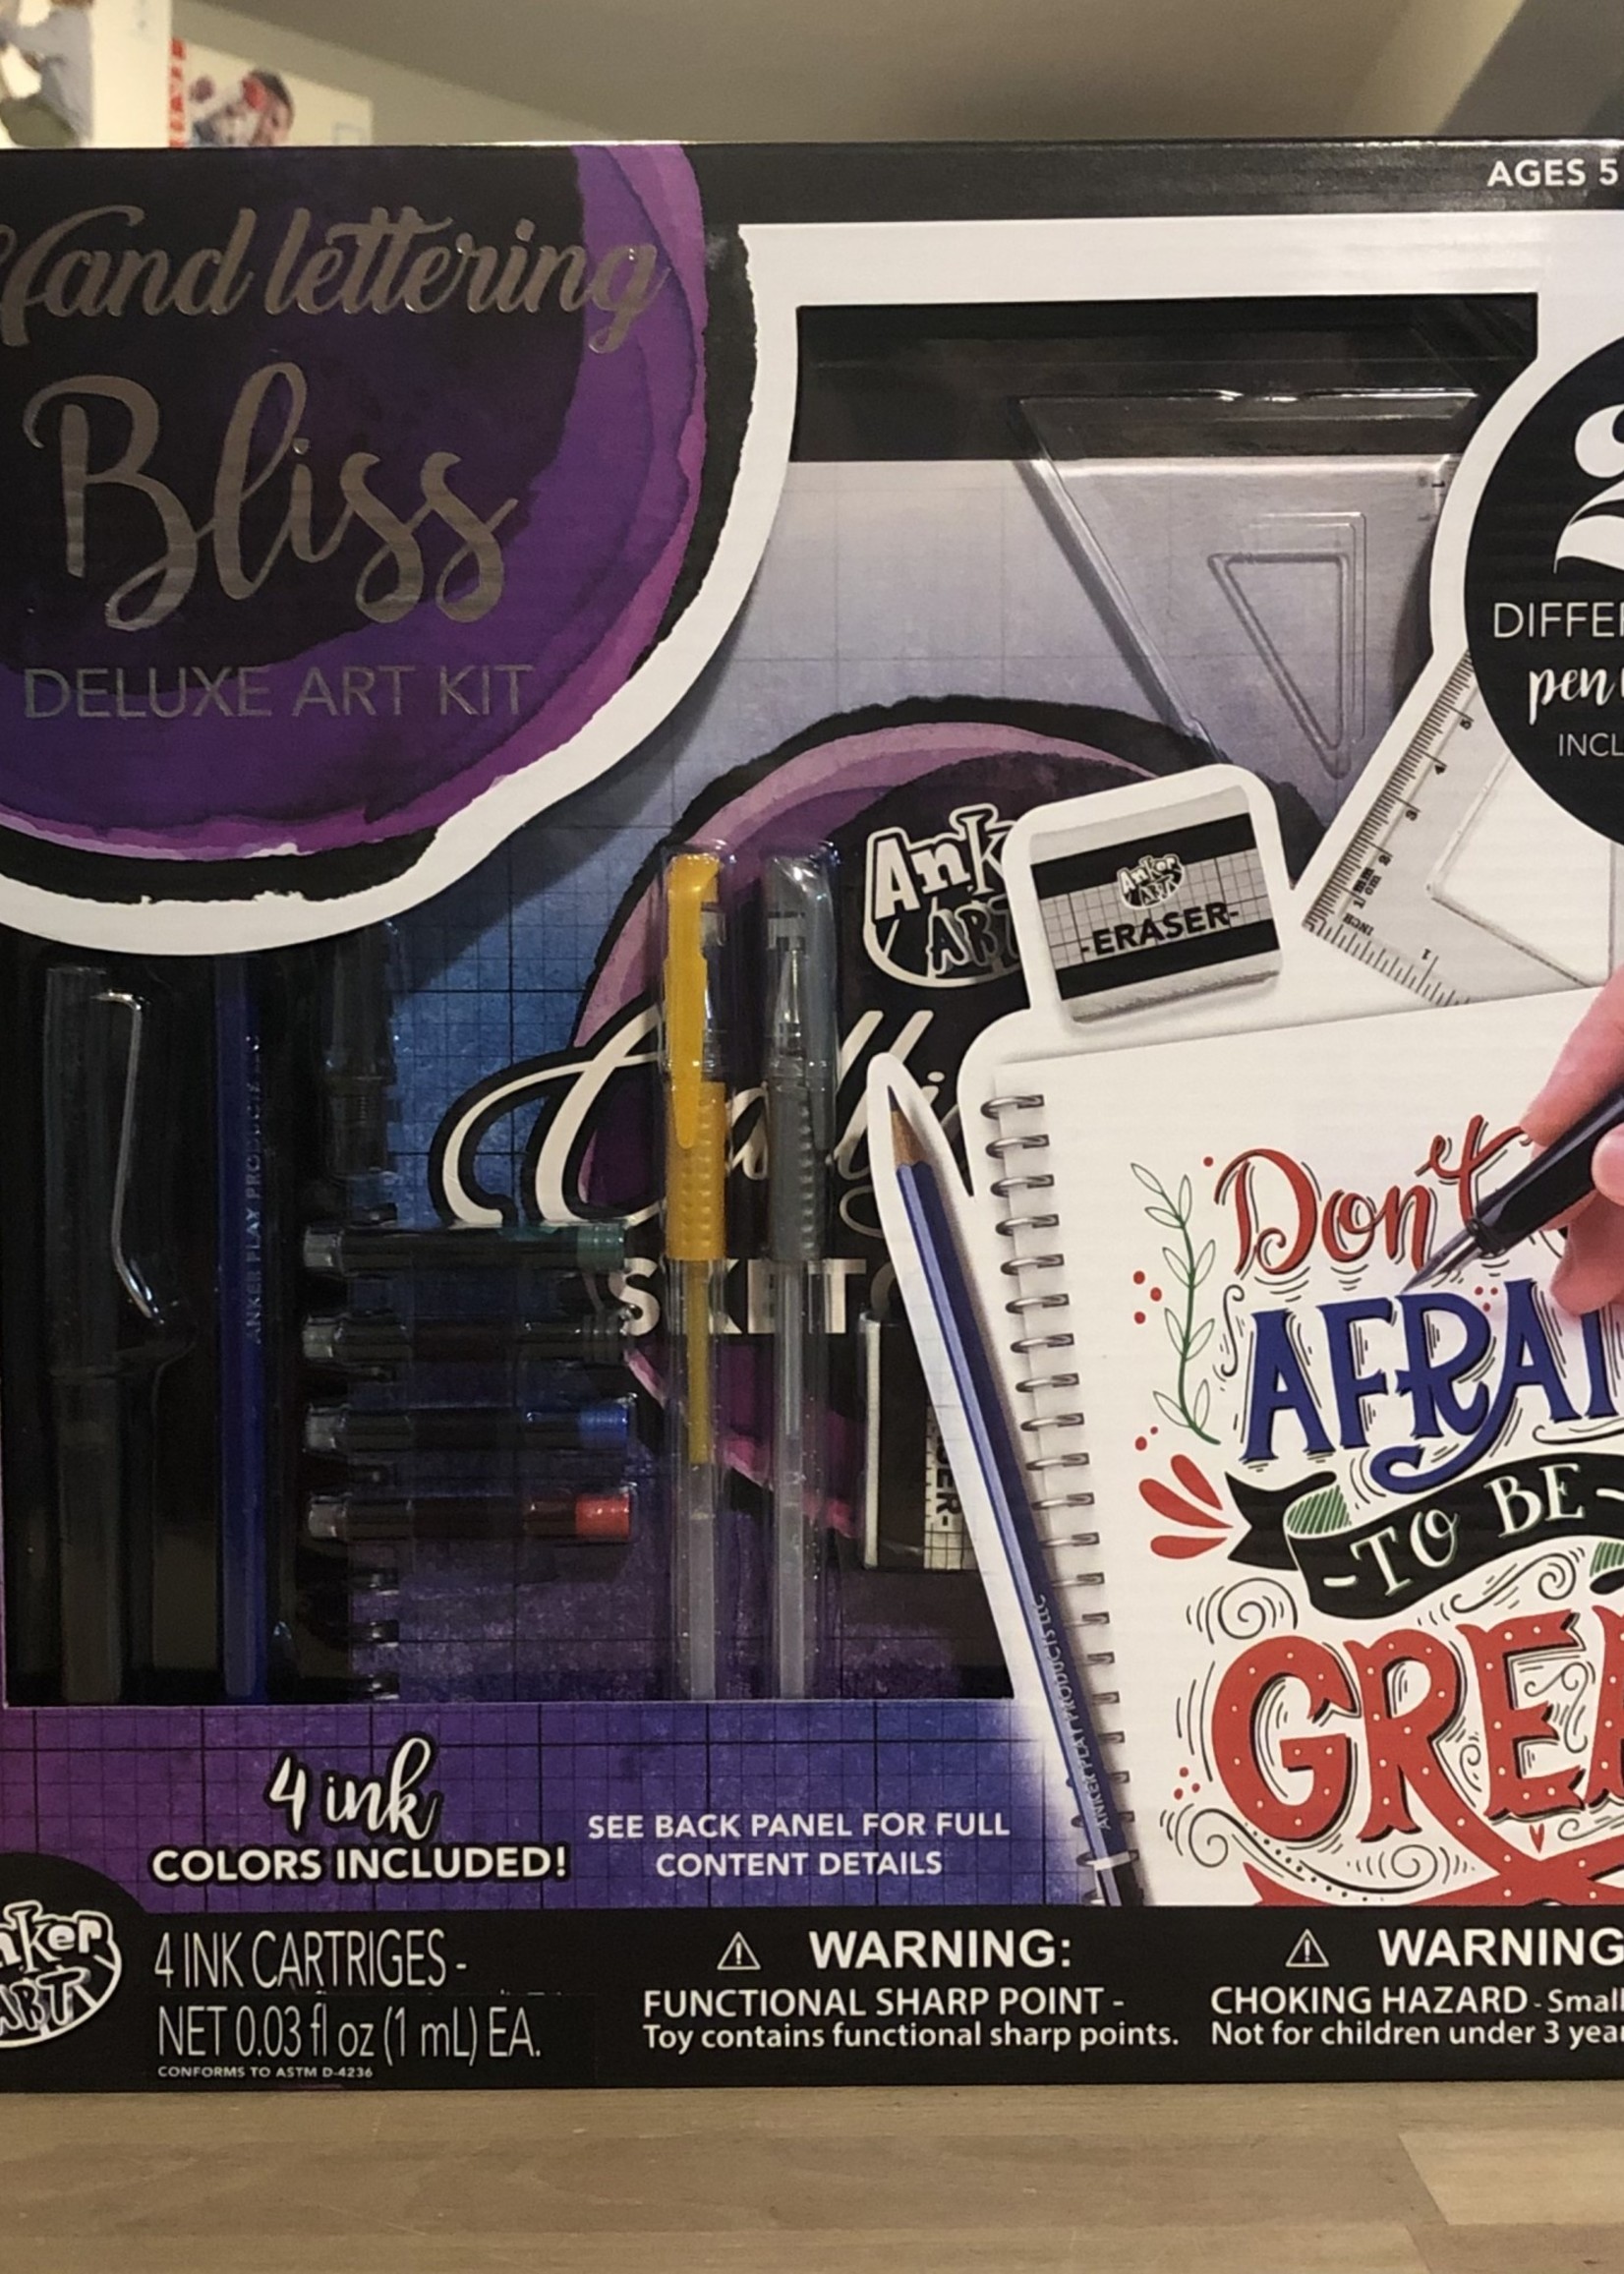 Hand-Lettering Bliss Deluxe Art Kit